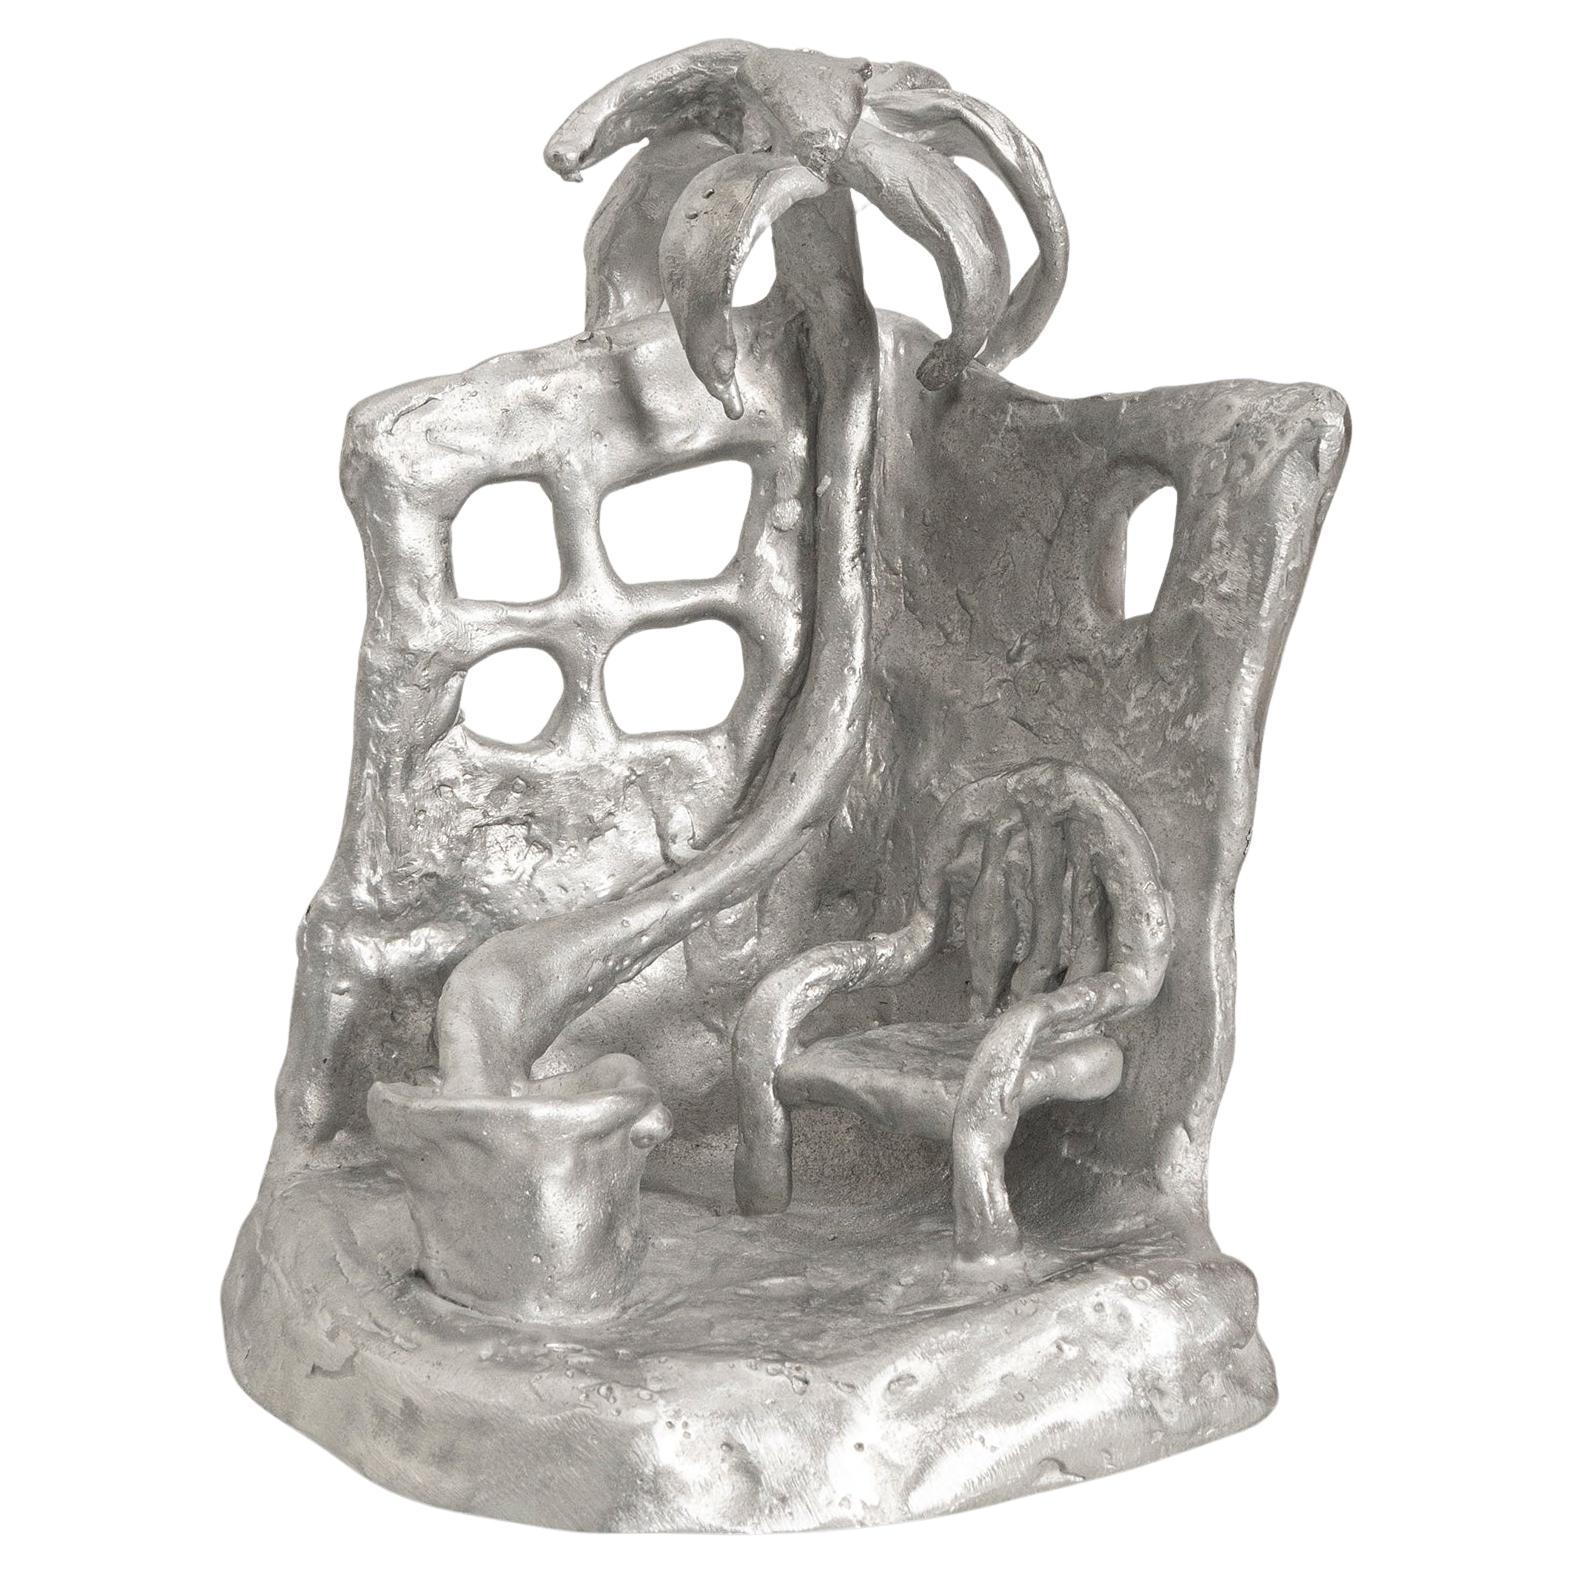 Bougeoir sculptural en aluminium moulé fait à la main représentant Siesta